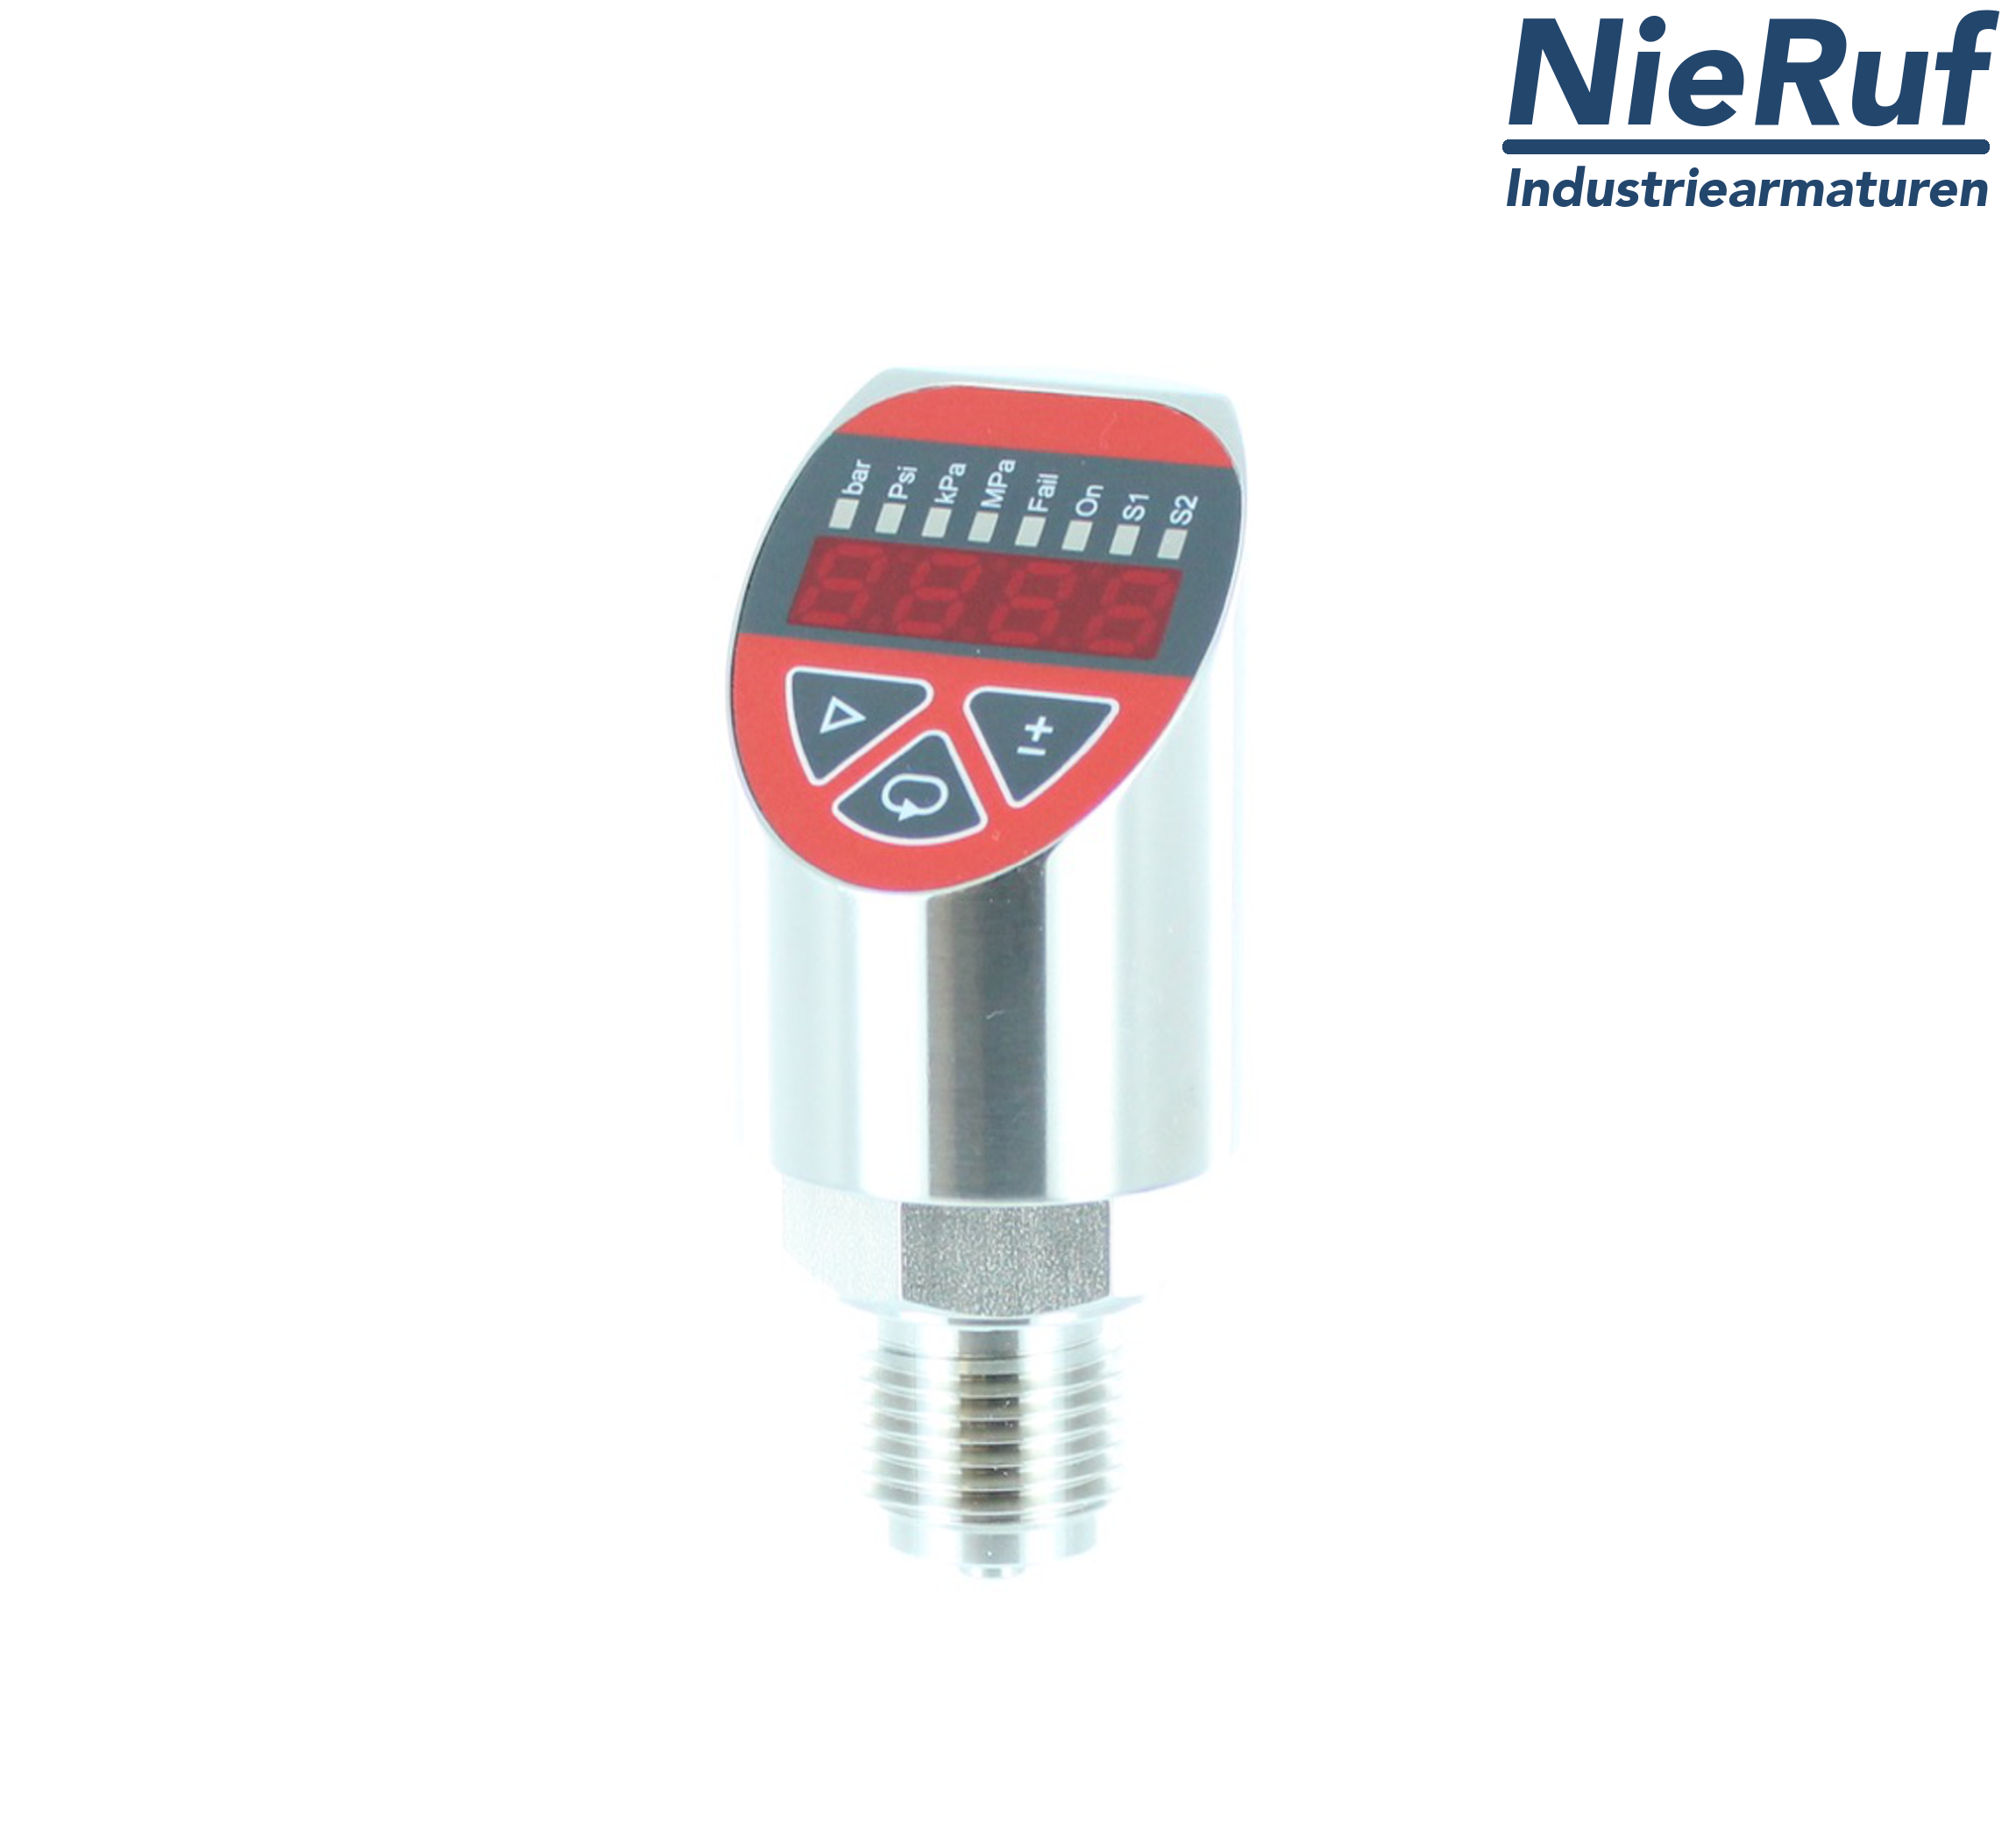 digital pressure sensor G 1/2" B IB 4-wire: 1xPNP, 1x4 - 20mA, Desina FPM 0,0 - 160,0 bar